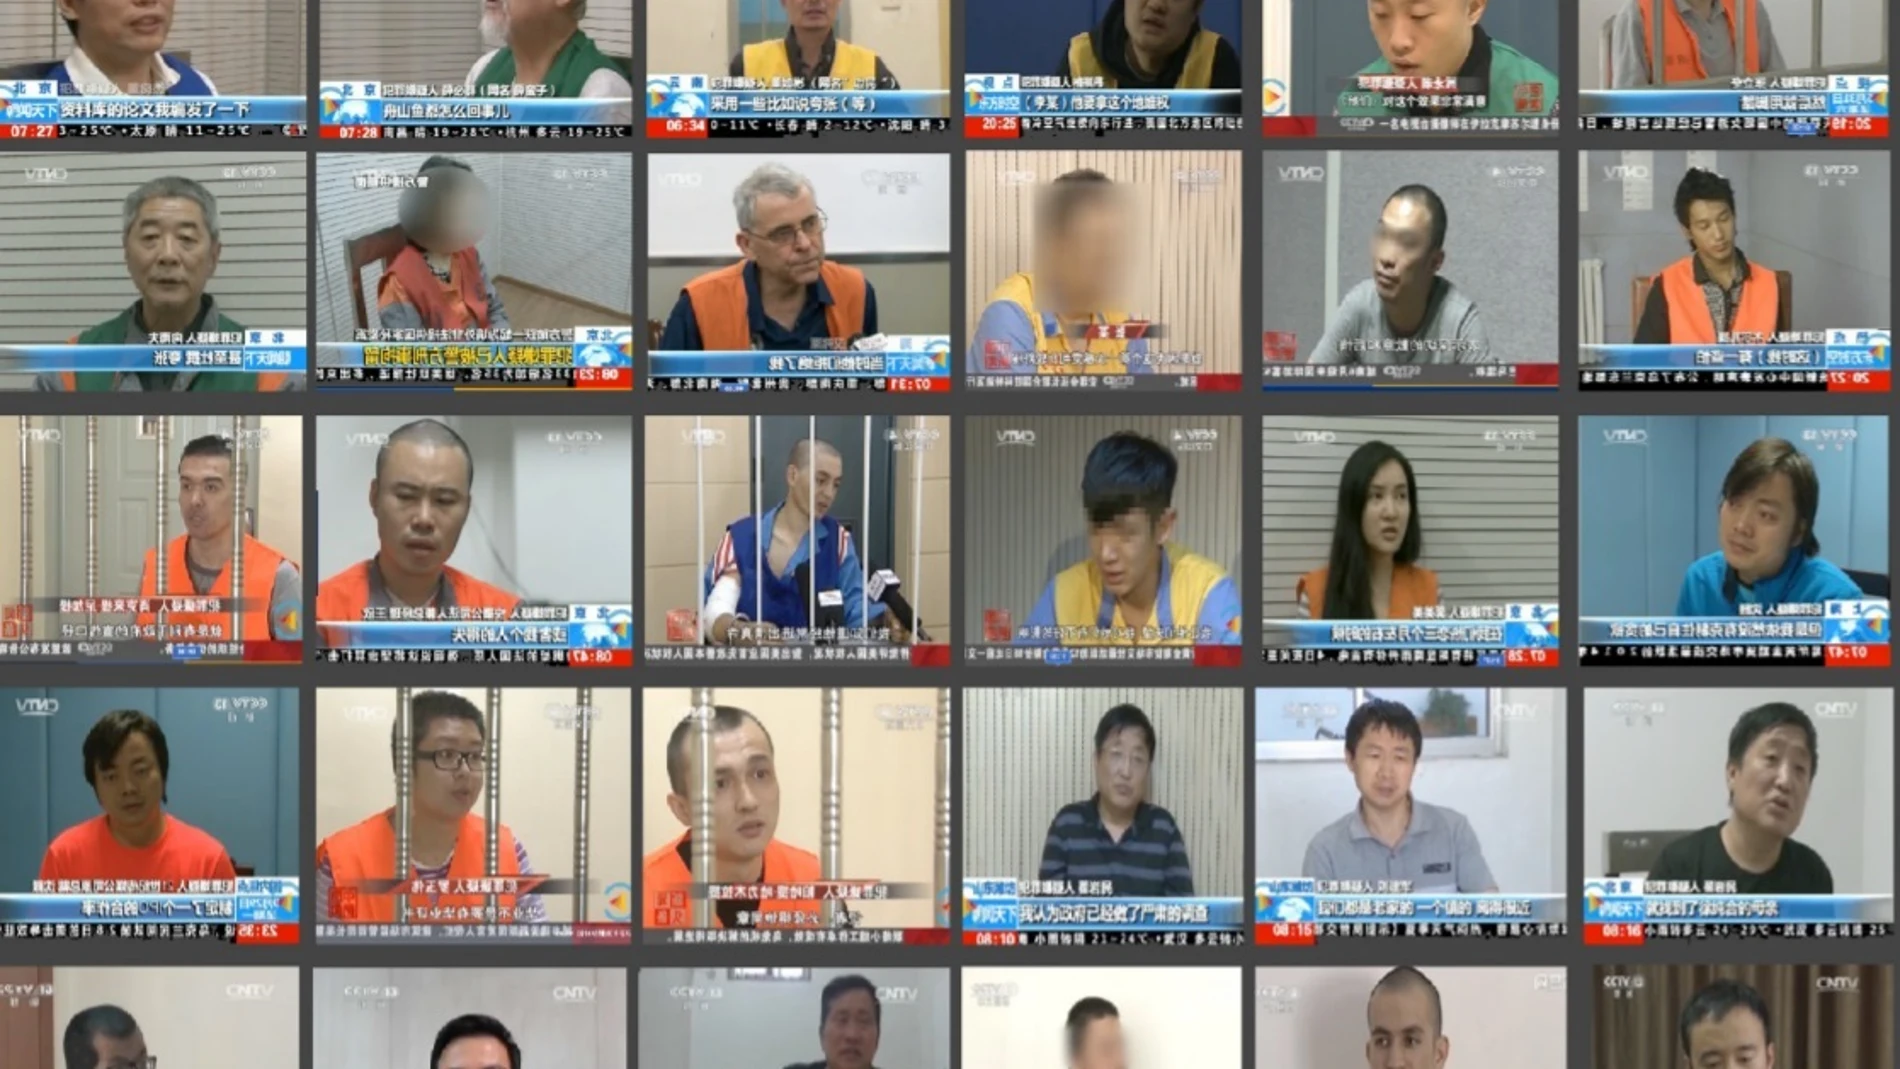 Taiwaneses extraditados a China confiesan sus delitos en un programa de la televisión estatal